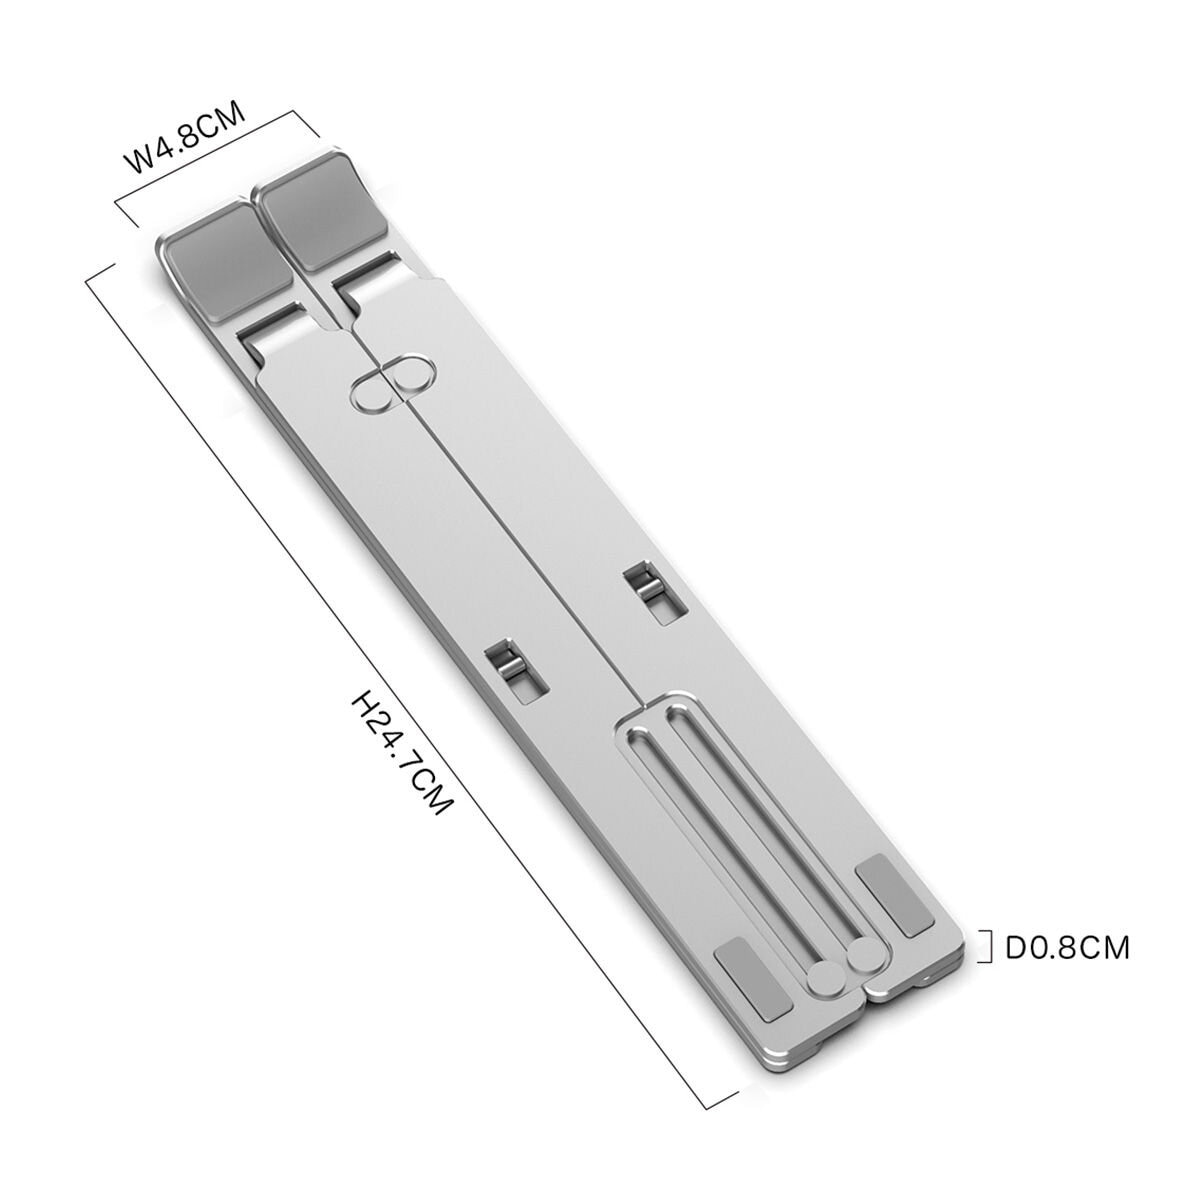 Kavalan 鋁合金攜帶型筆電支架 KAV011